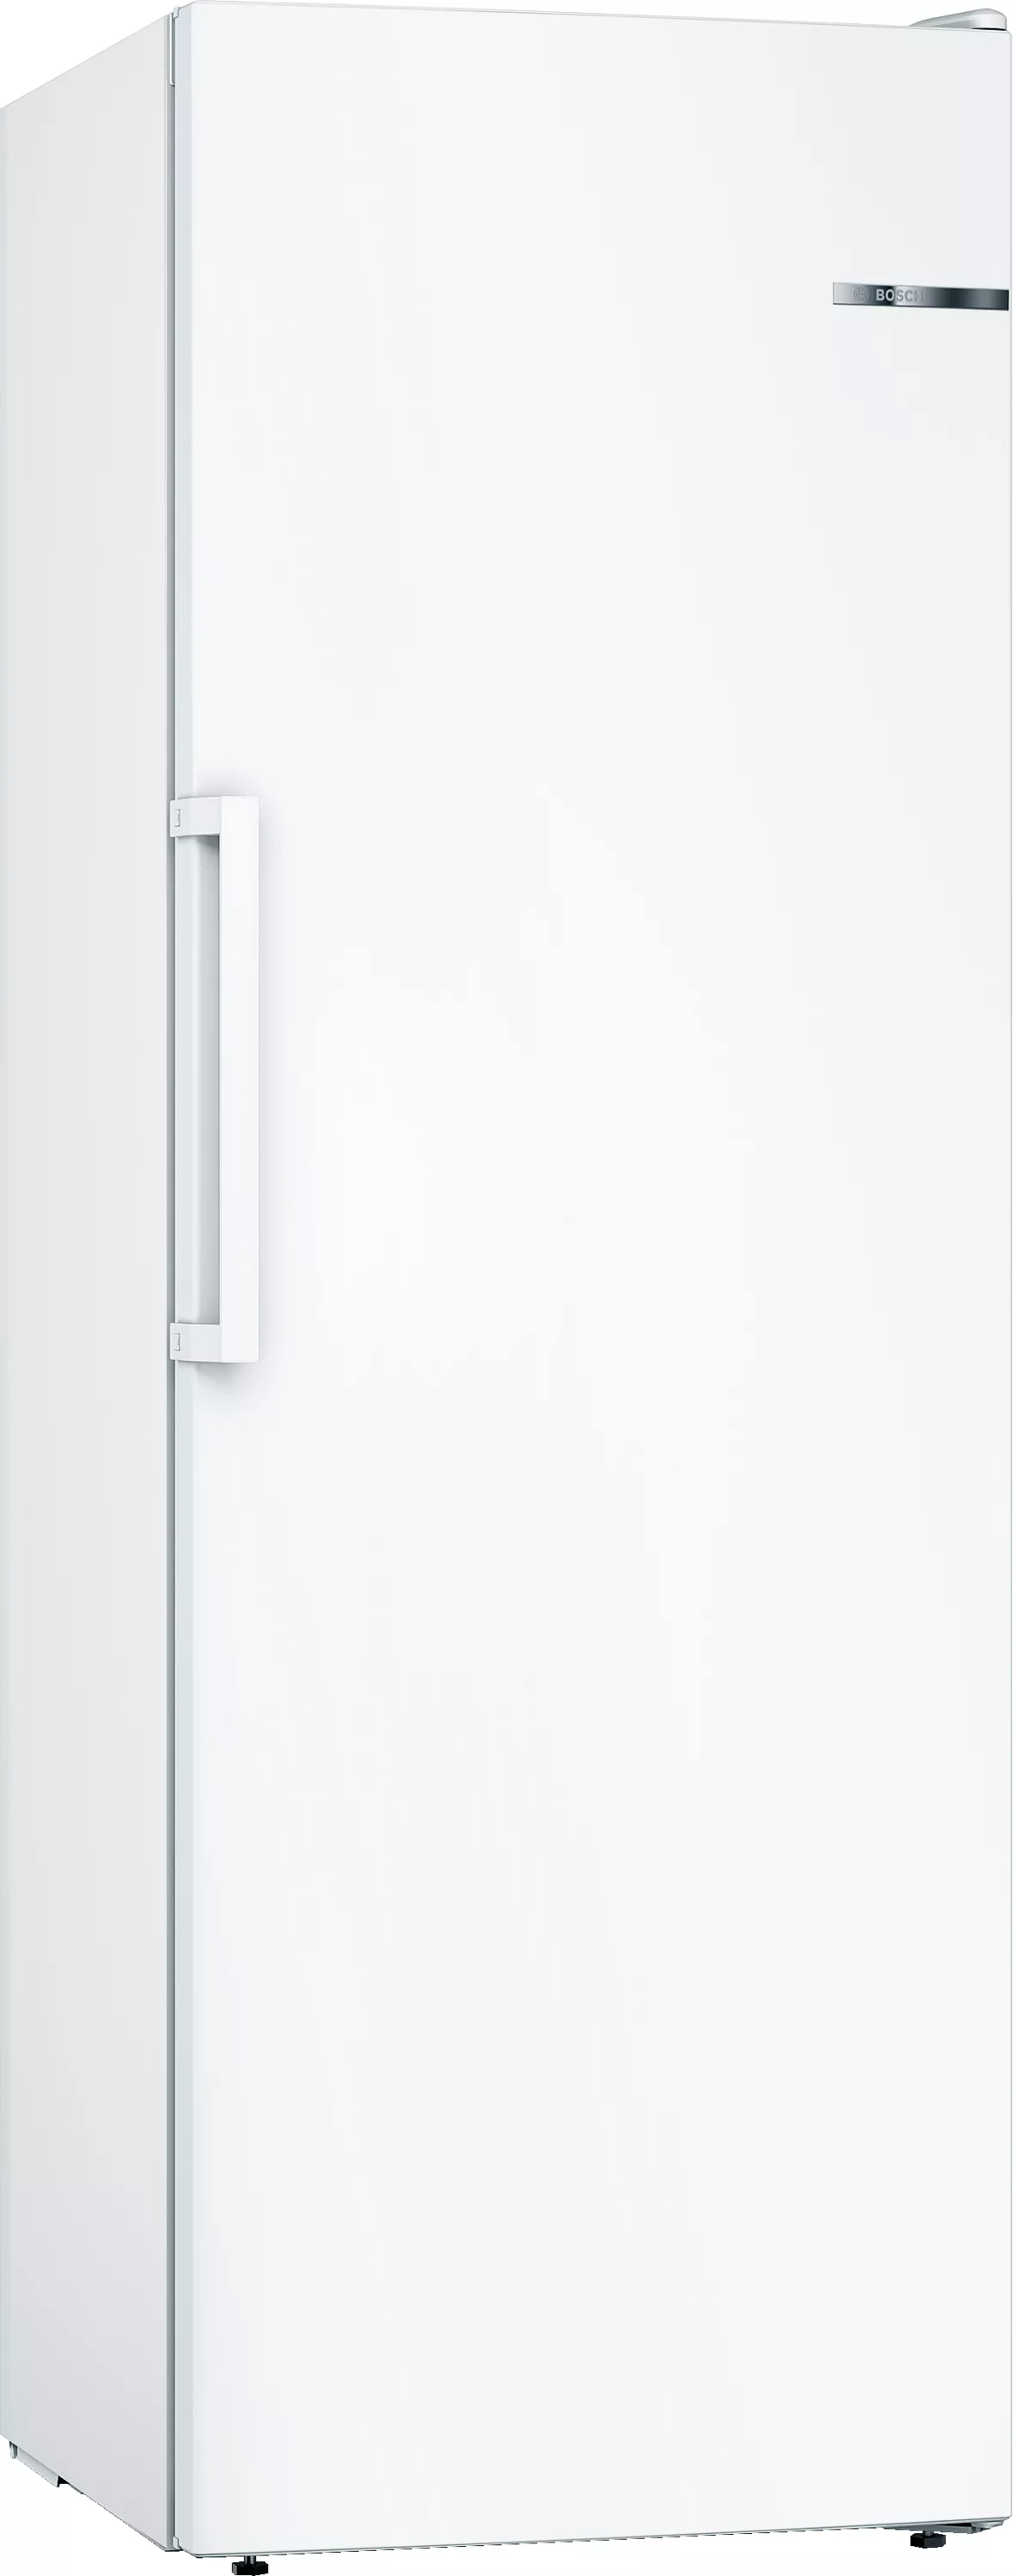 Bosch Serie 4, Freistehender Gefrierschrank, 176 x 60 cm, Weiß, GSN33VWEP